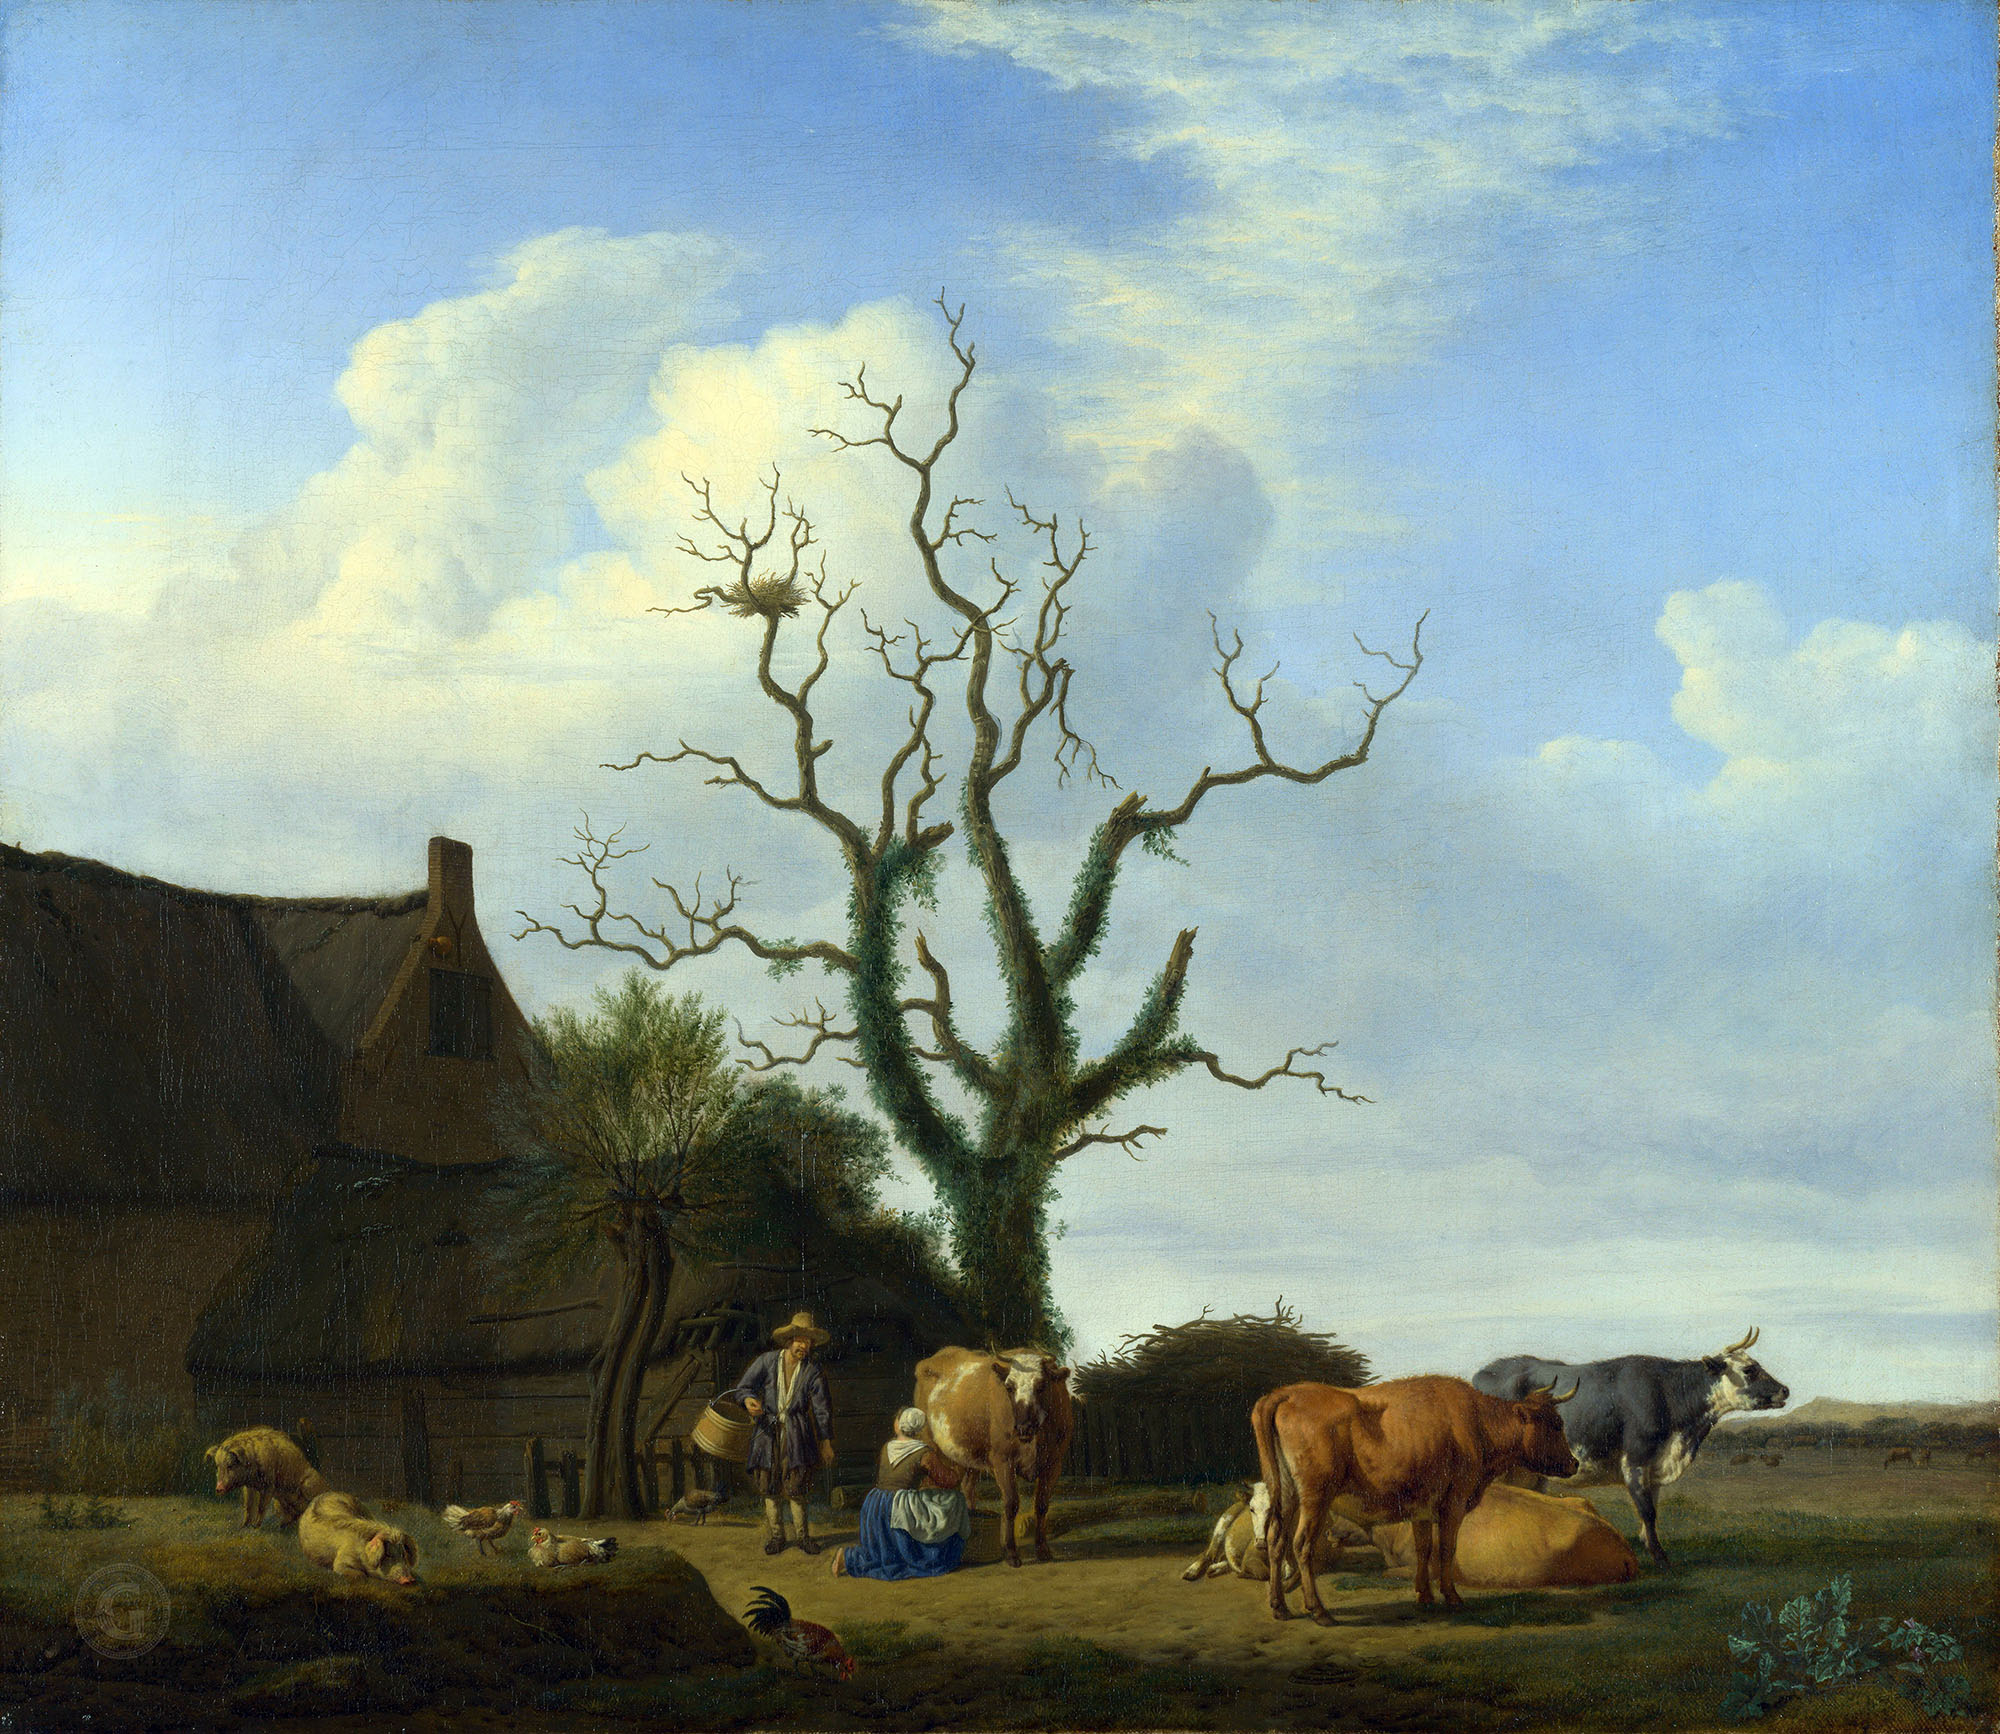 Адриан ван де Вельде. "Ферма с мёртвым деревом". 1658. Британская национальная галерея.